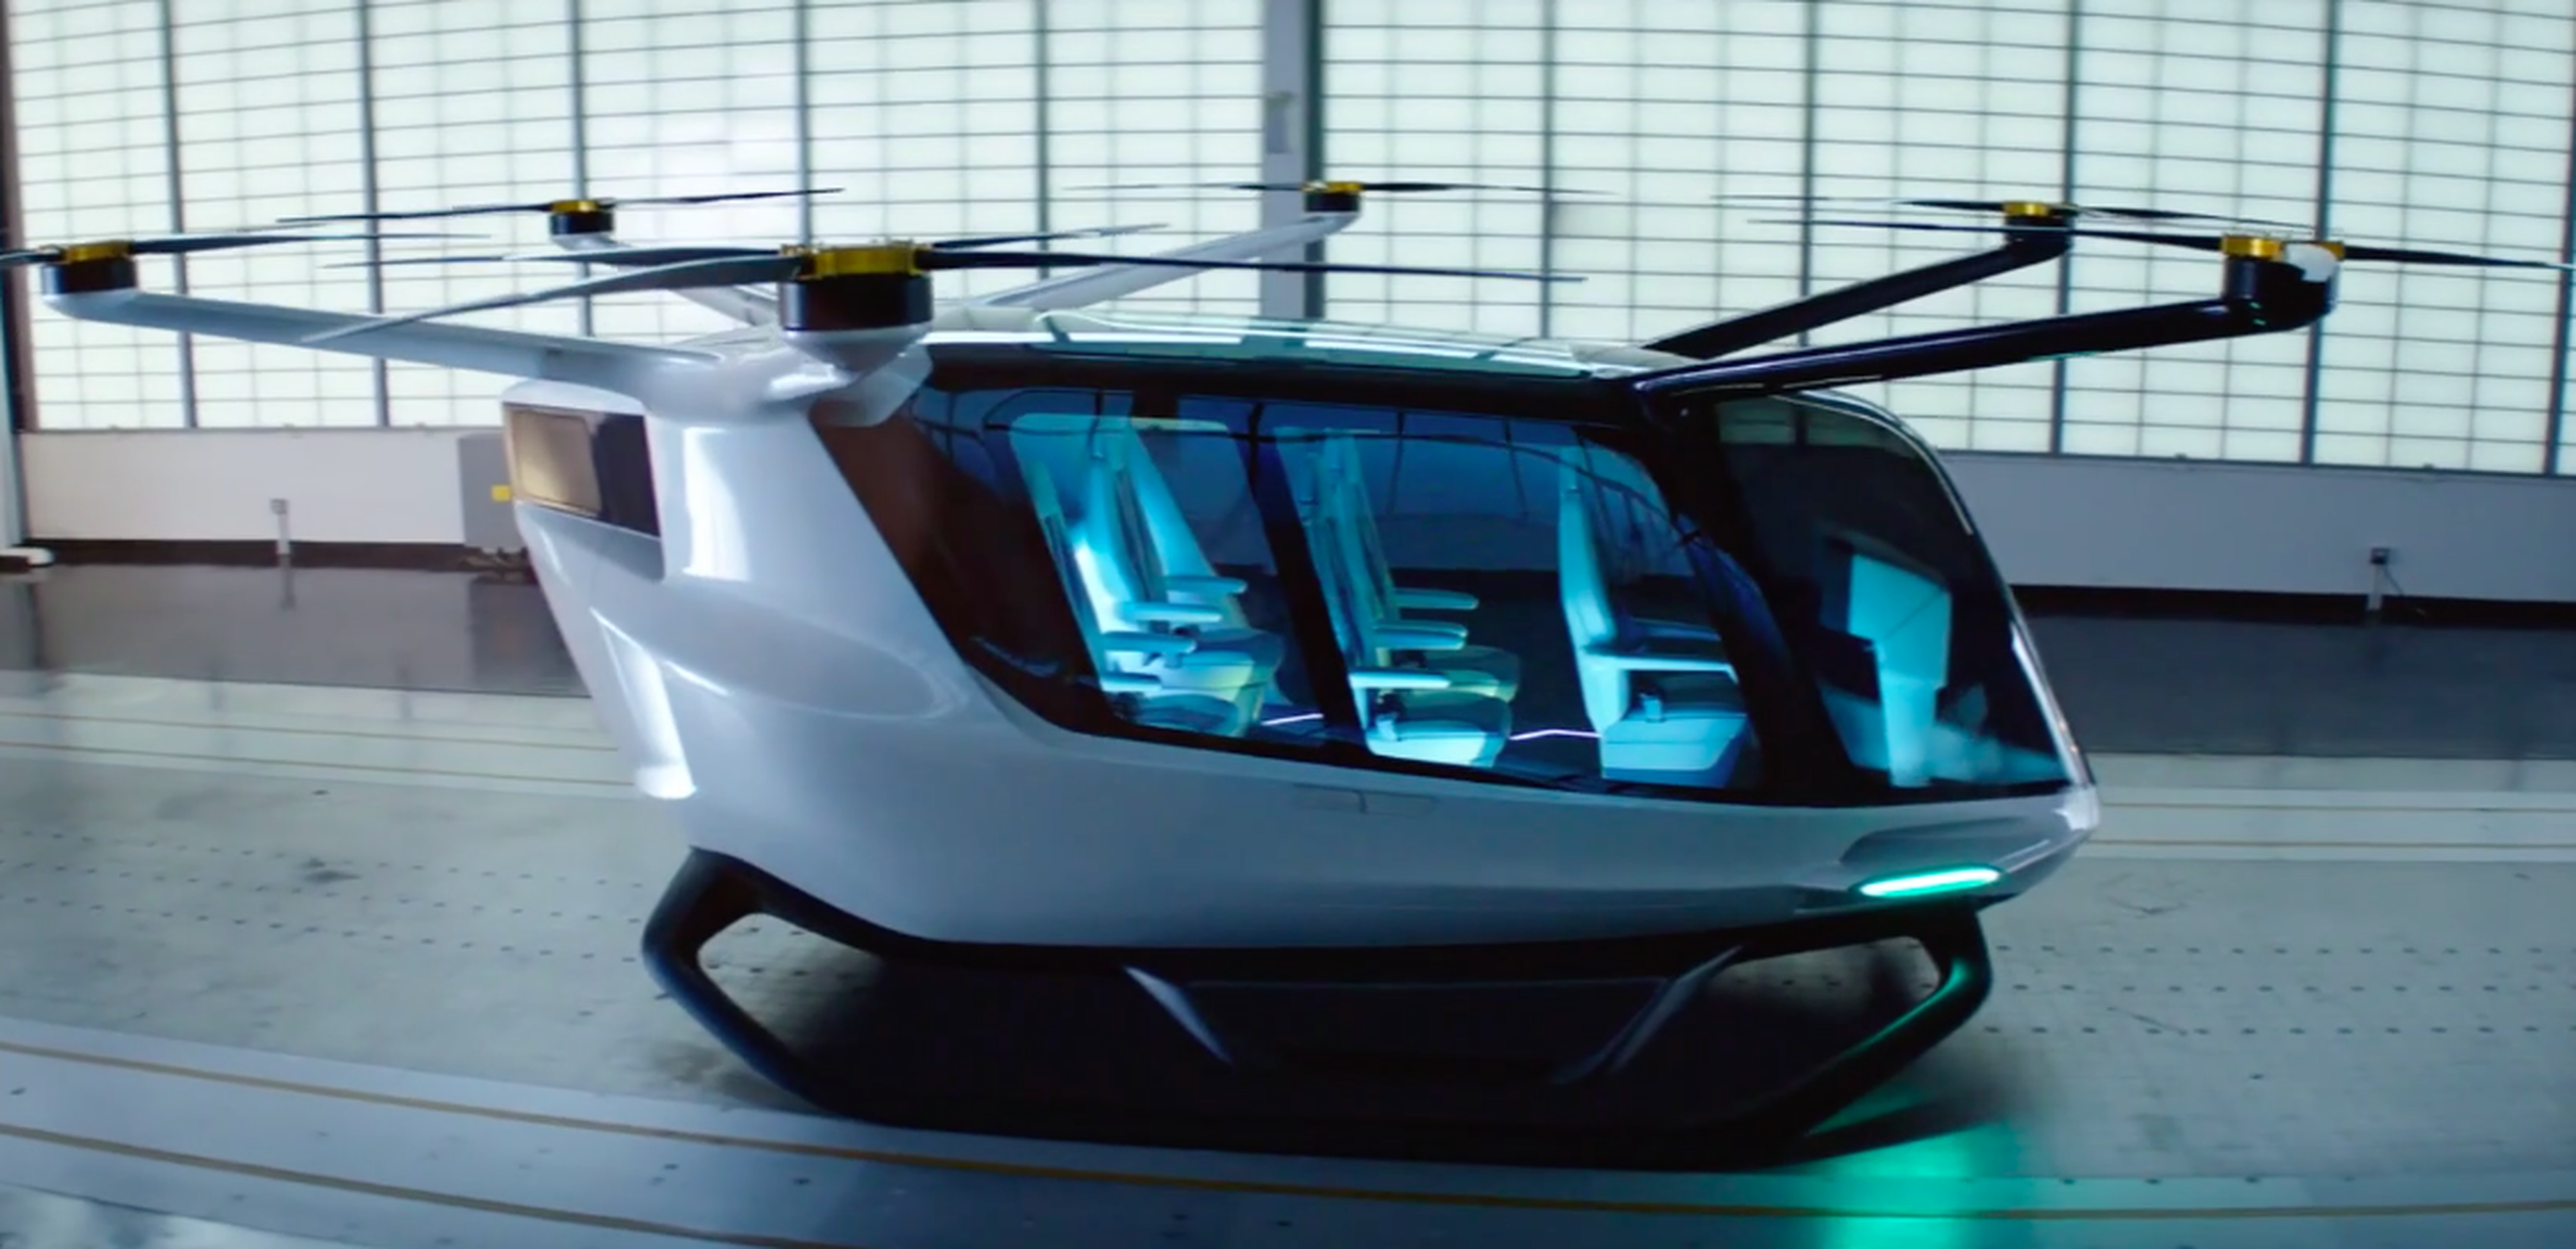 VÍDEO: Así es el nuevo coche volador Skai Flying Car... ¡mola mucho!